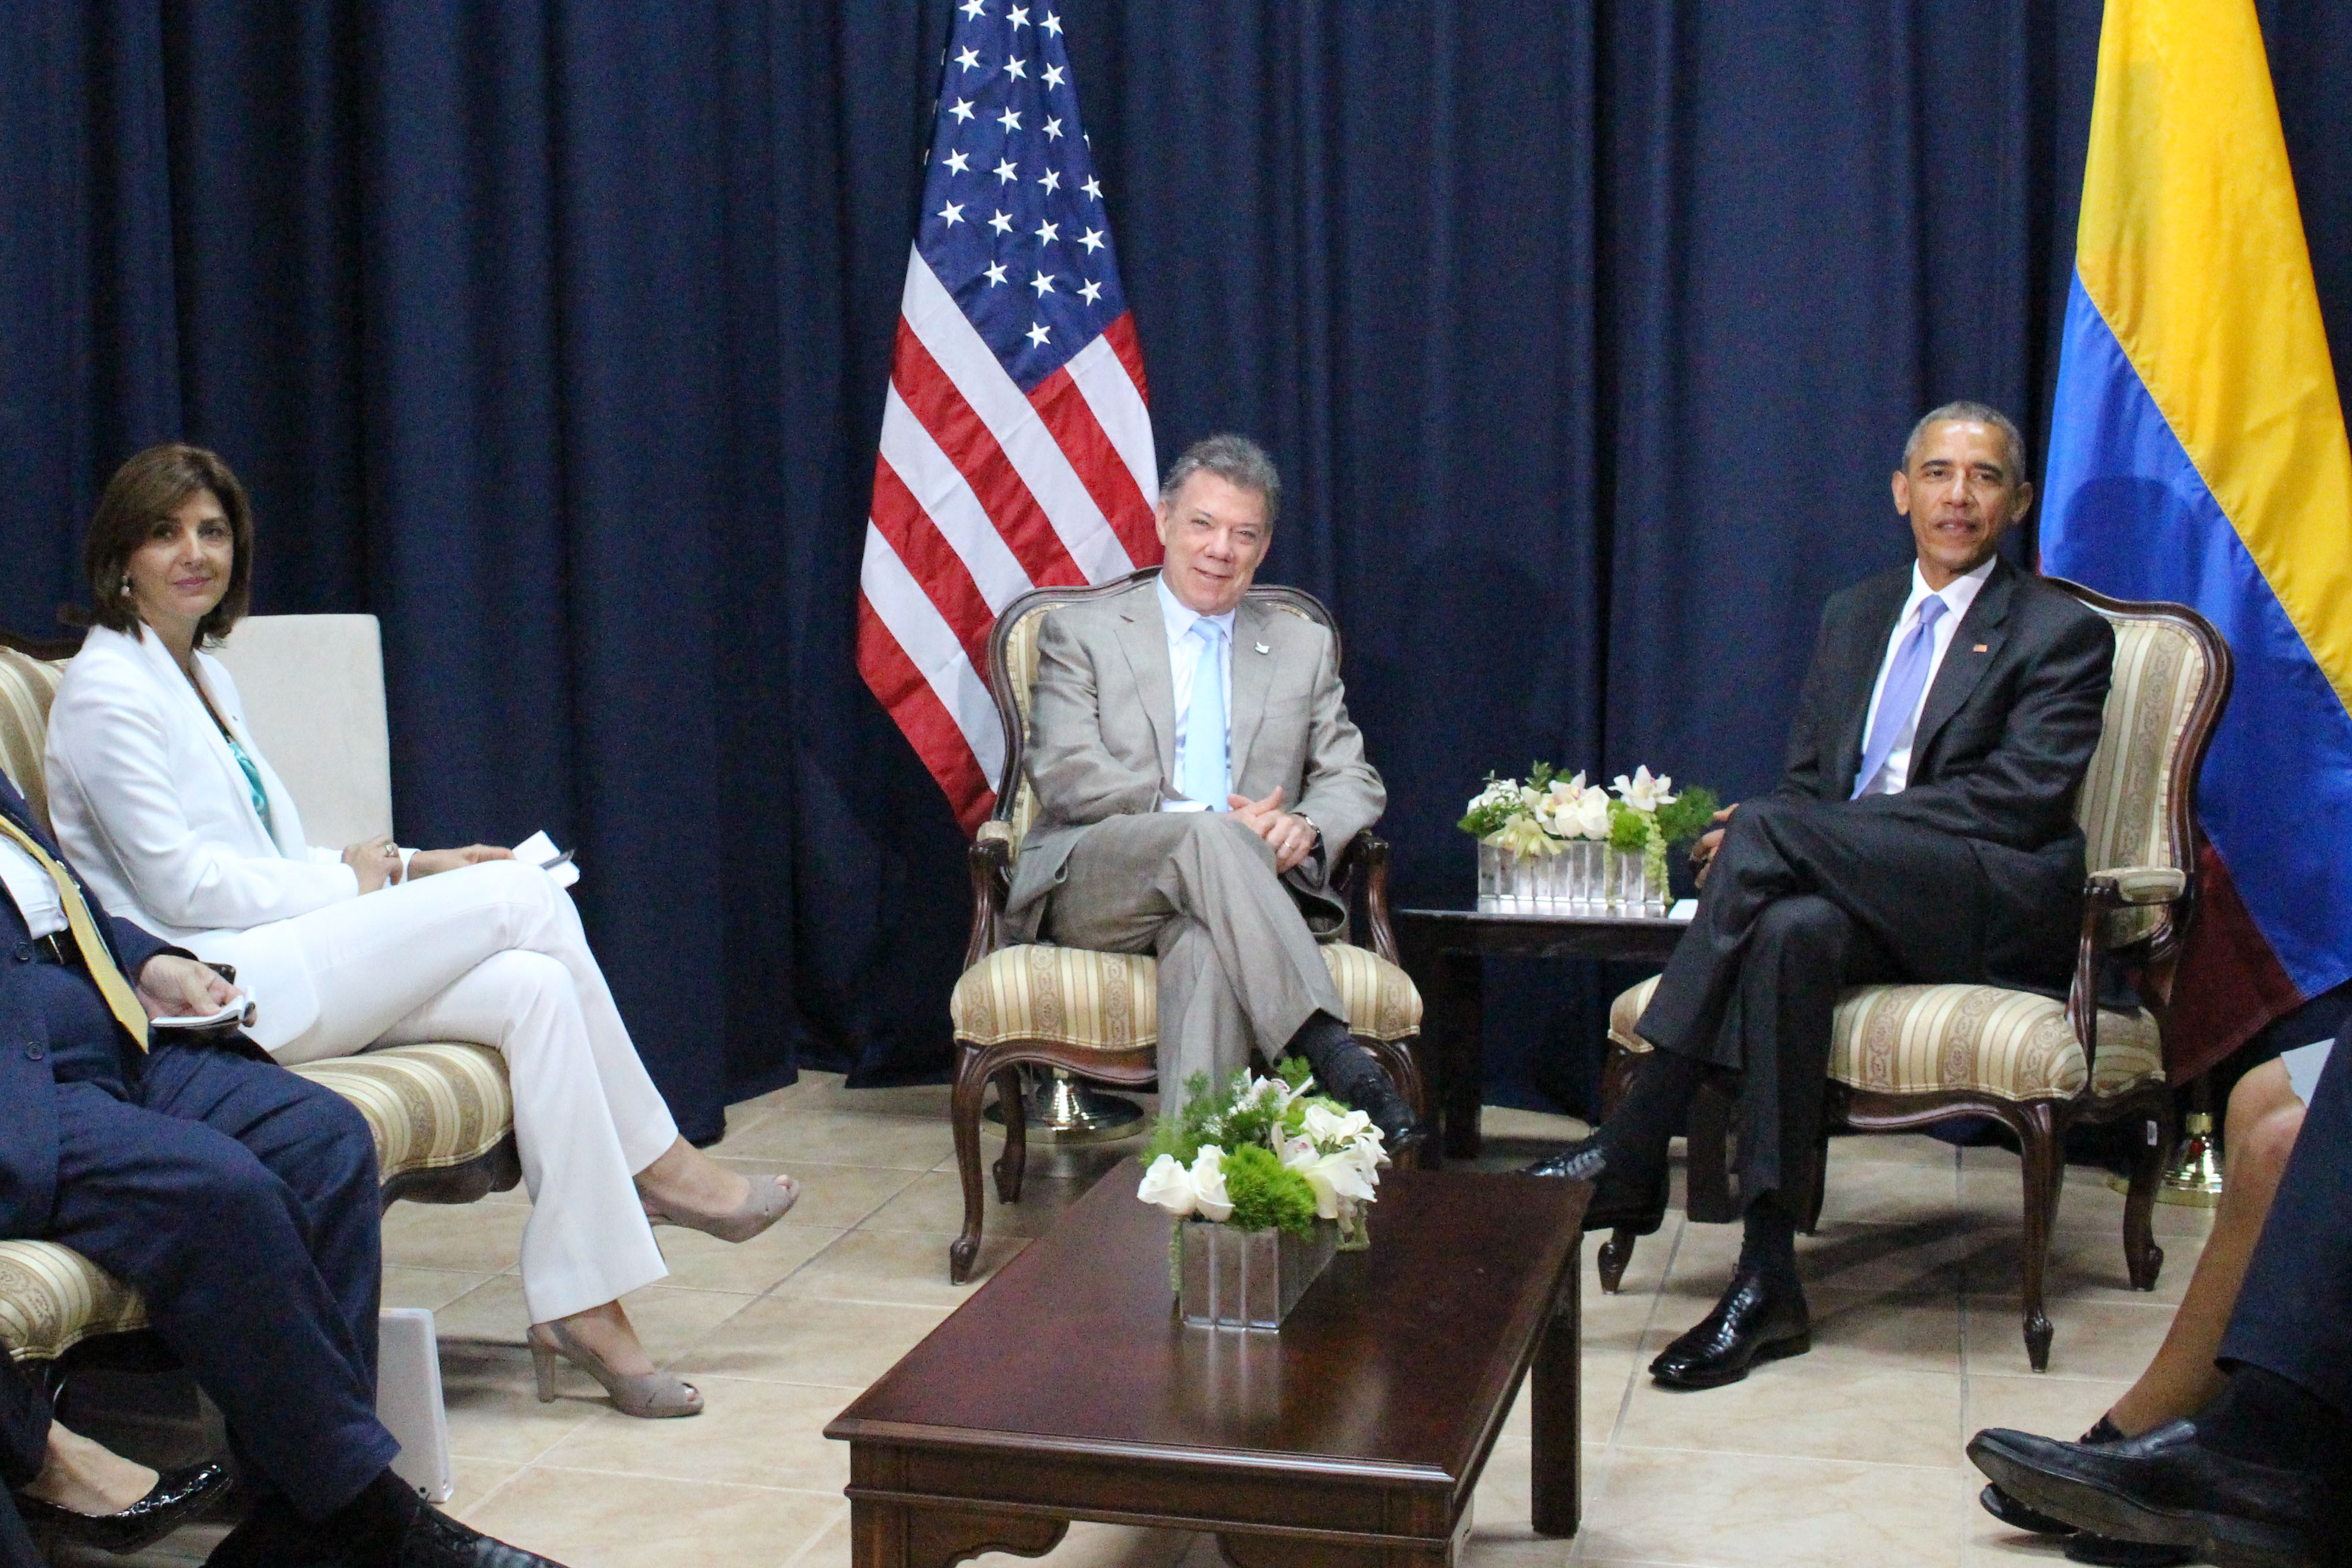 President Obama Invites President Santos for Official Visit